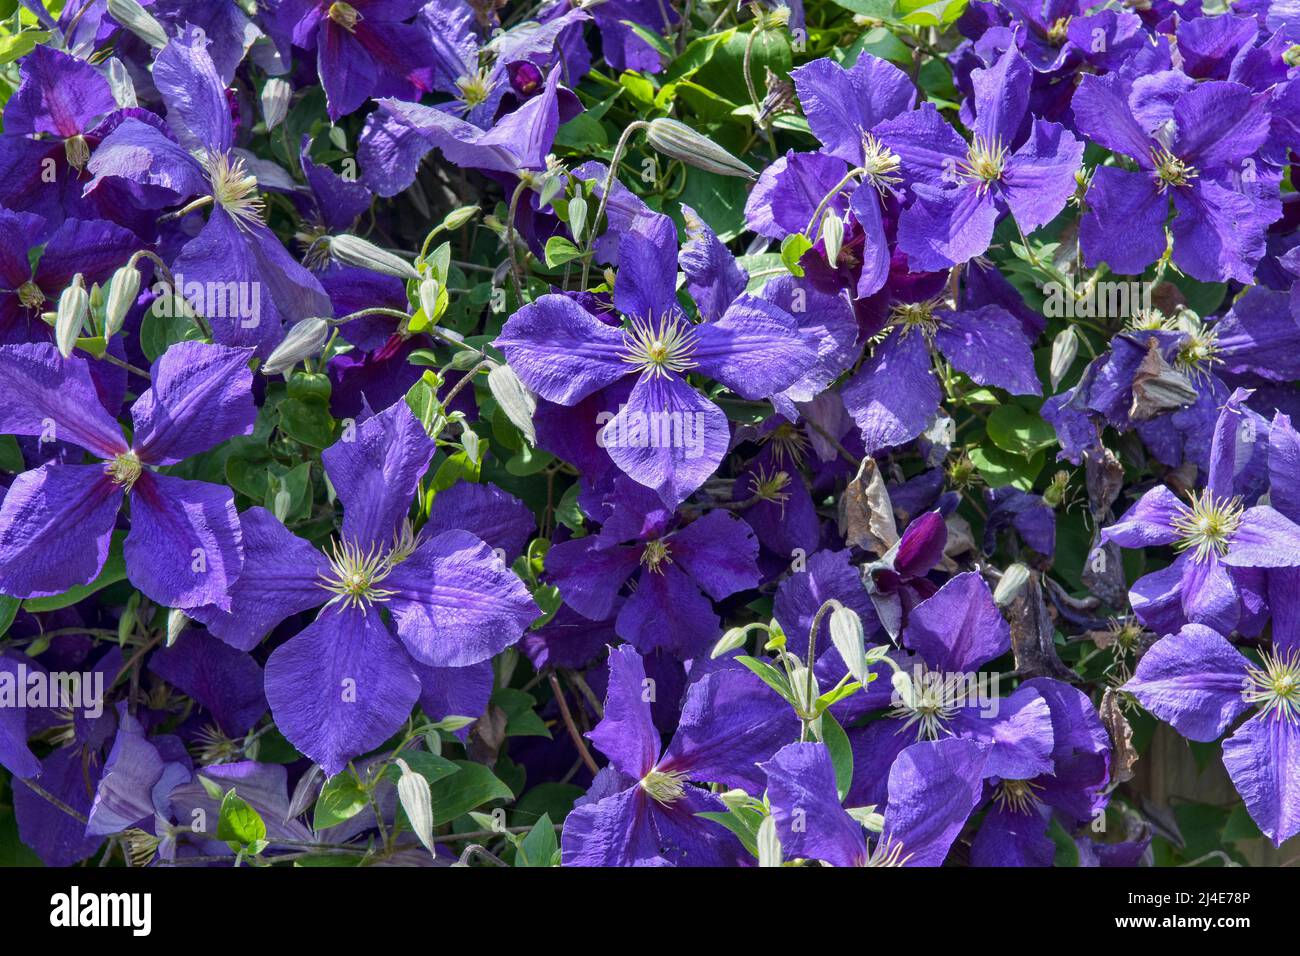 Imagen de marco completo de hermosas clematis floridas de color púrpura intenso. Jackmanii que tiene 4 pétalos Foto de stock